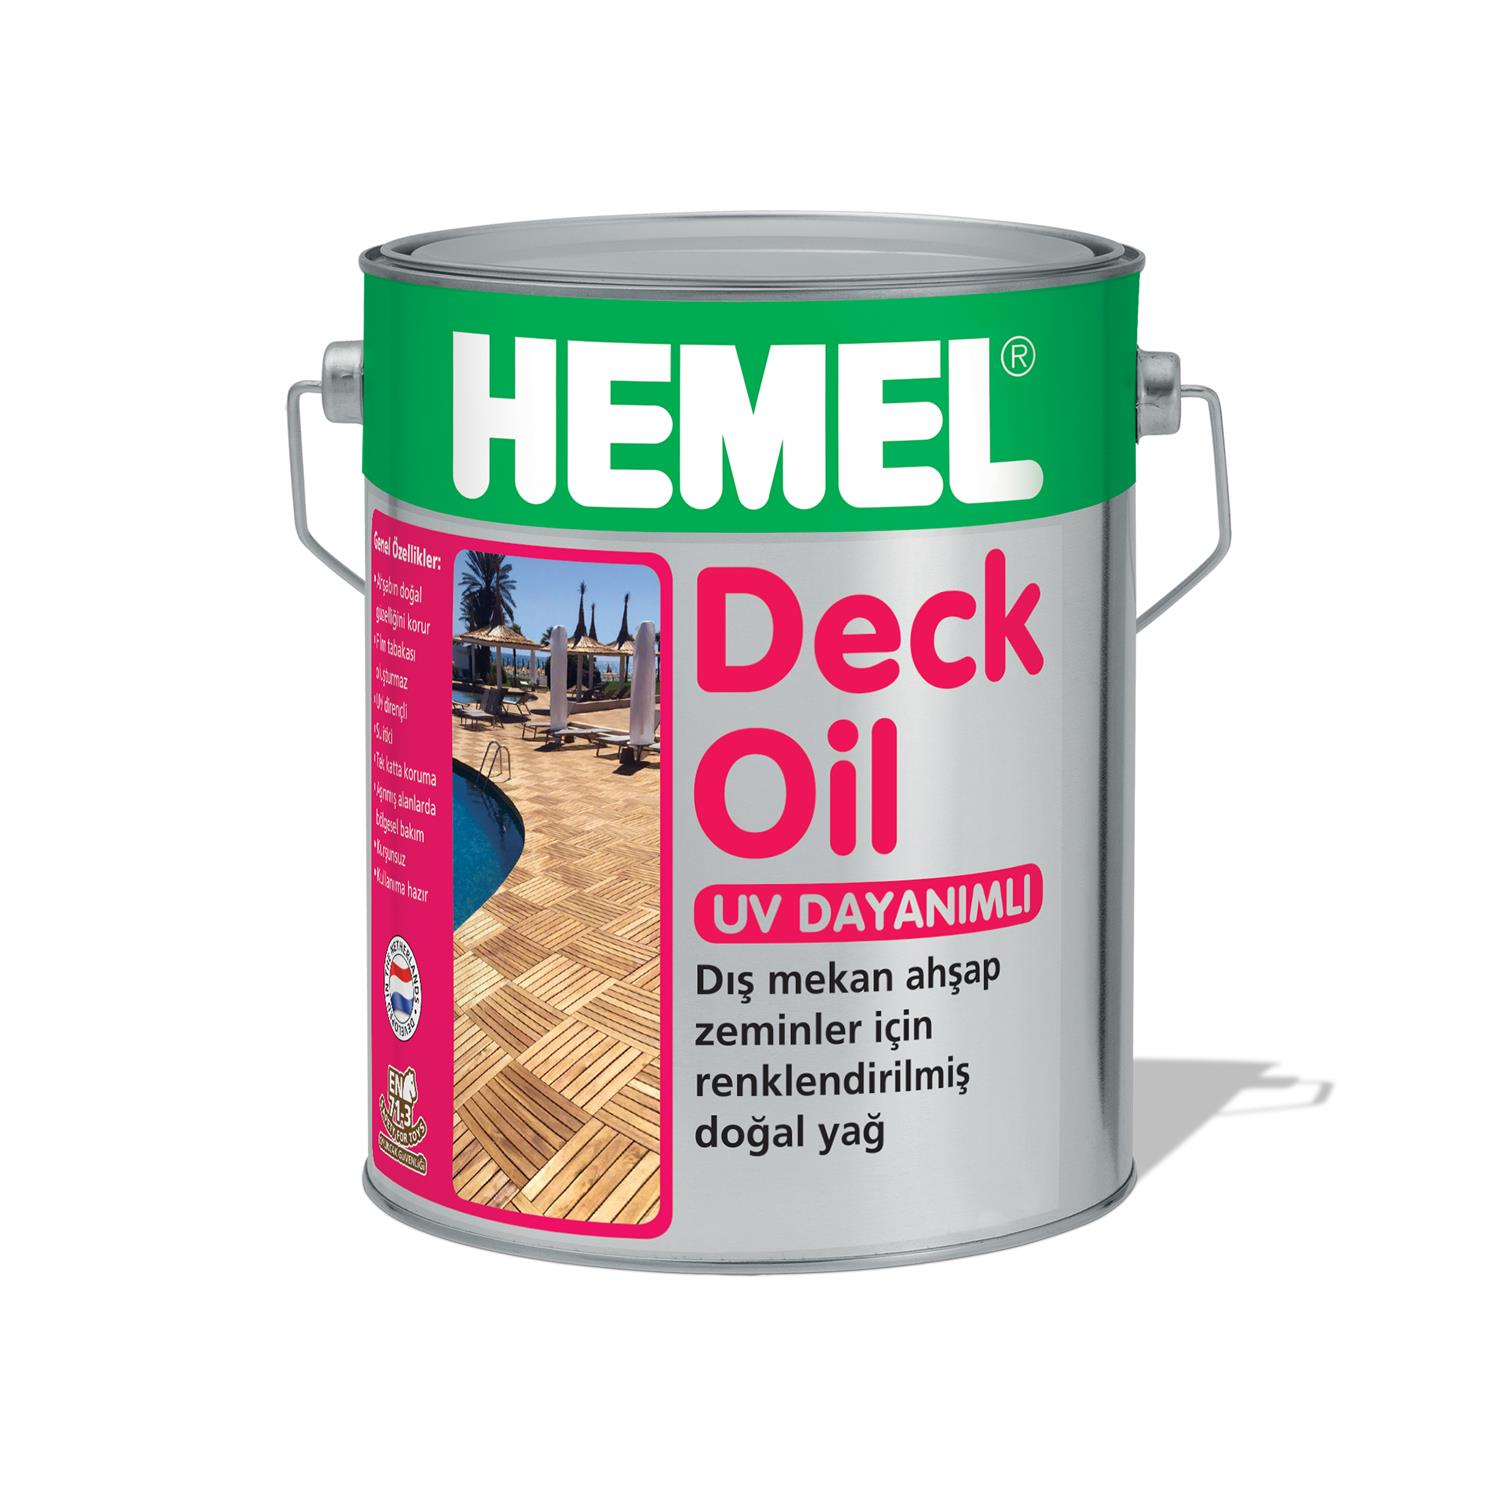 HEMEL Deck Oil - Deck Zeminler için Renkli Yağ 15 LT